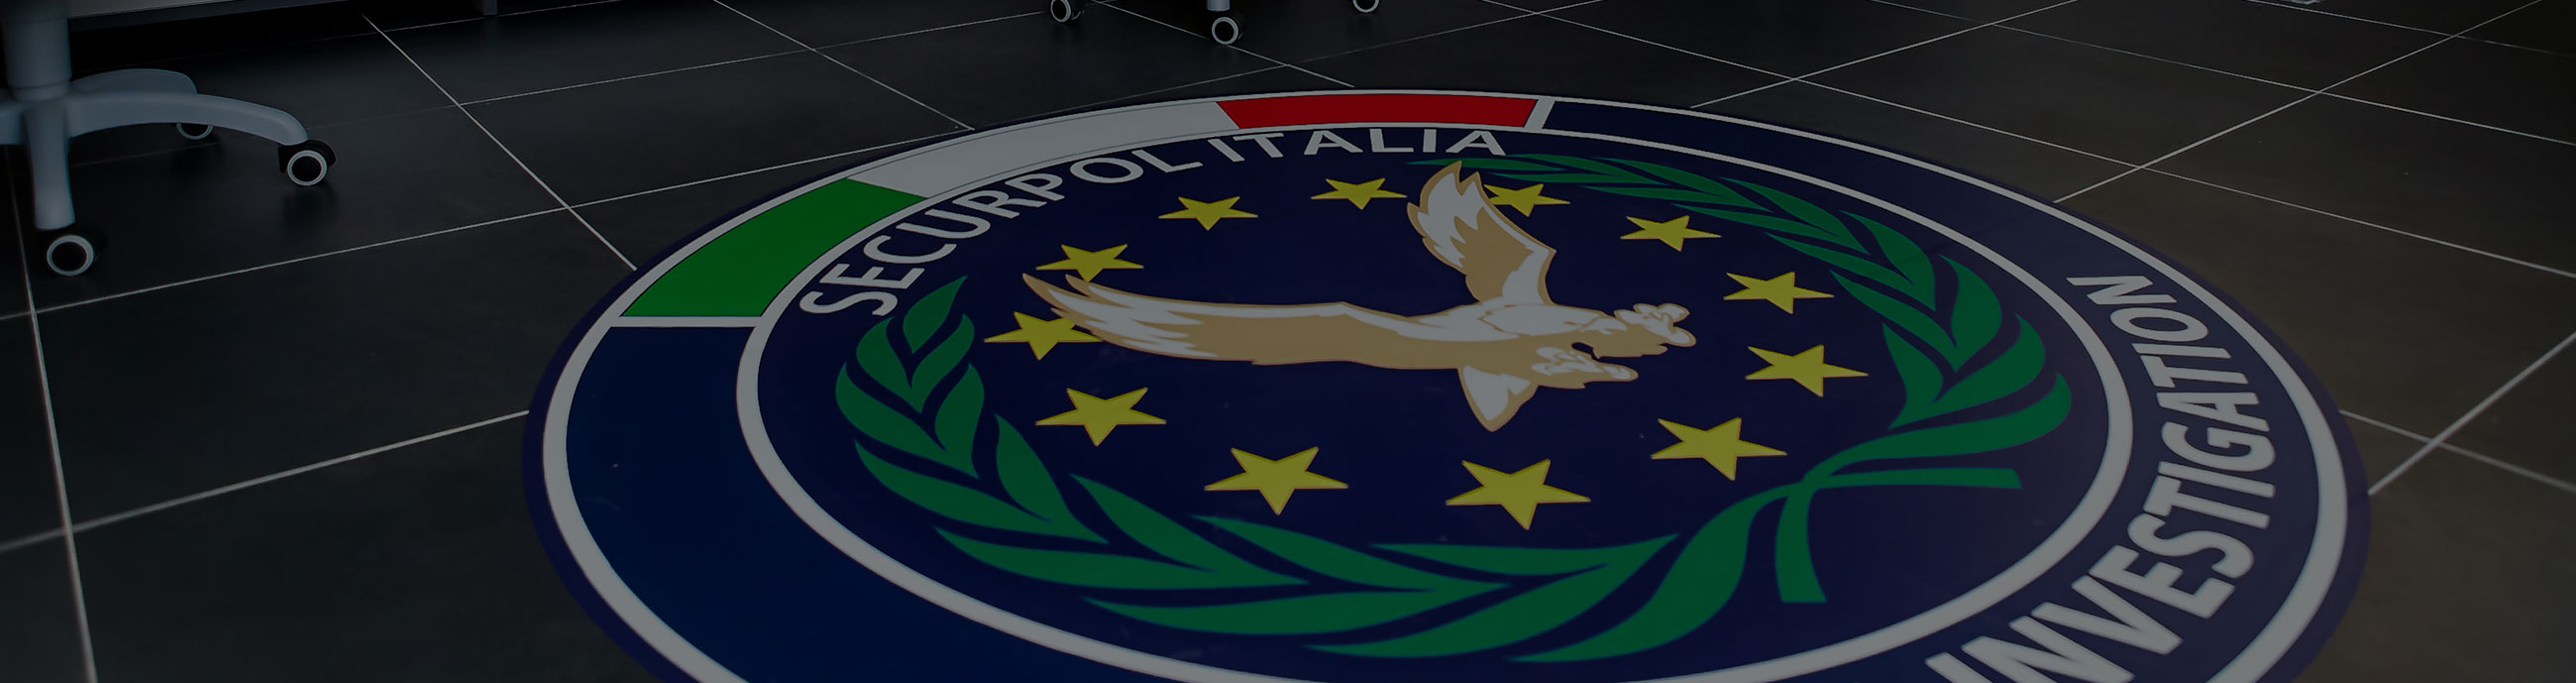 Istituto di Vigilanza e d’Investigazioni Securpol Italia